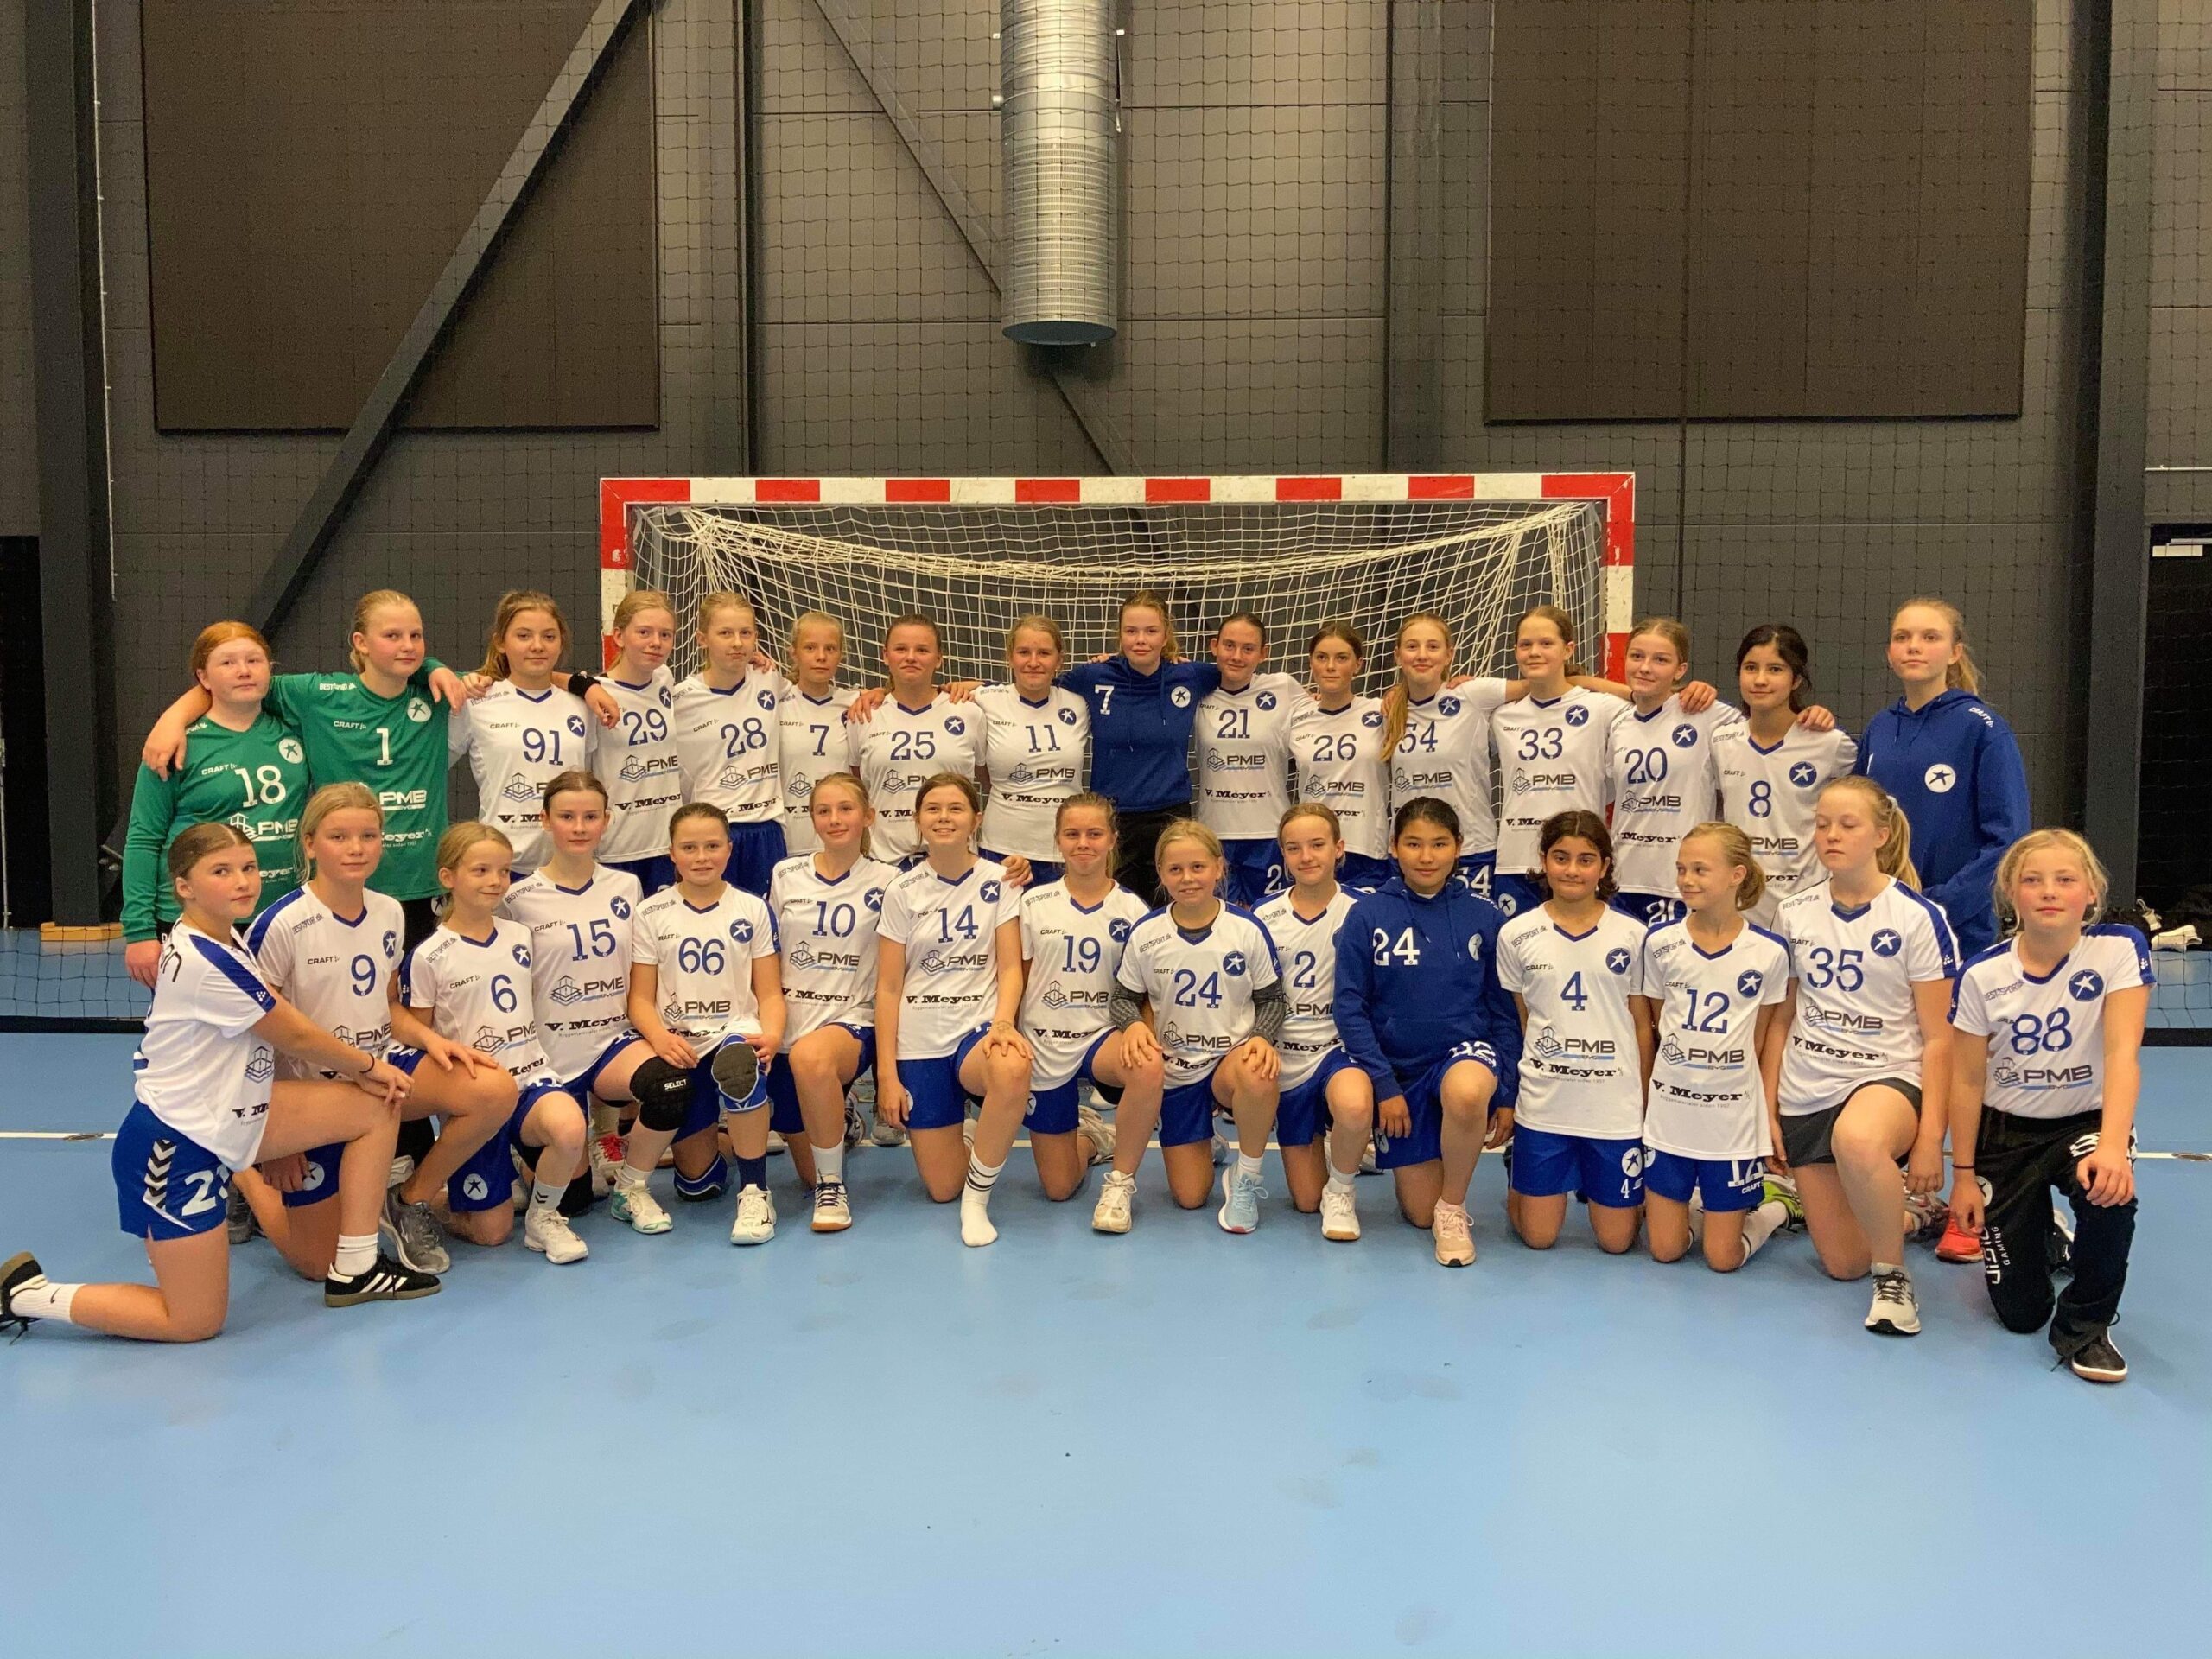 Danmarks største håndboldklub er nu flot klædt på